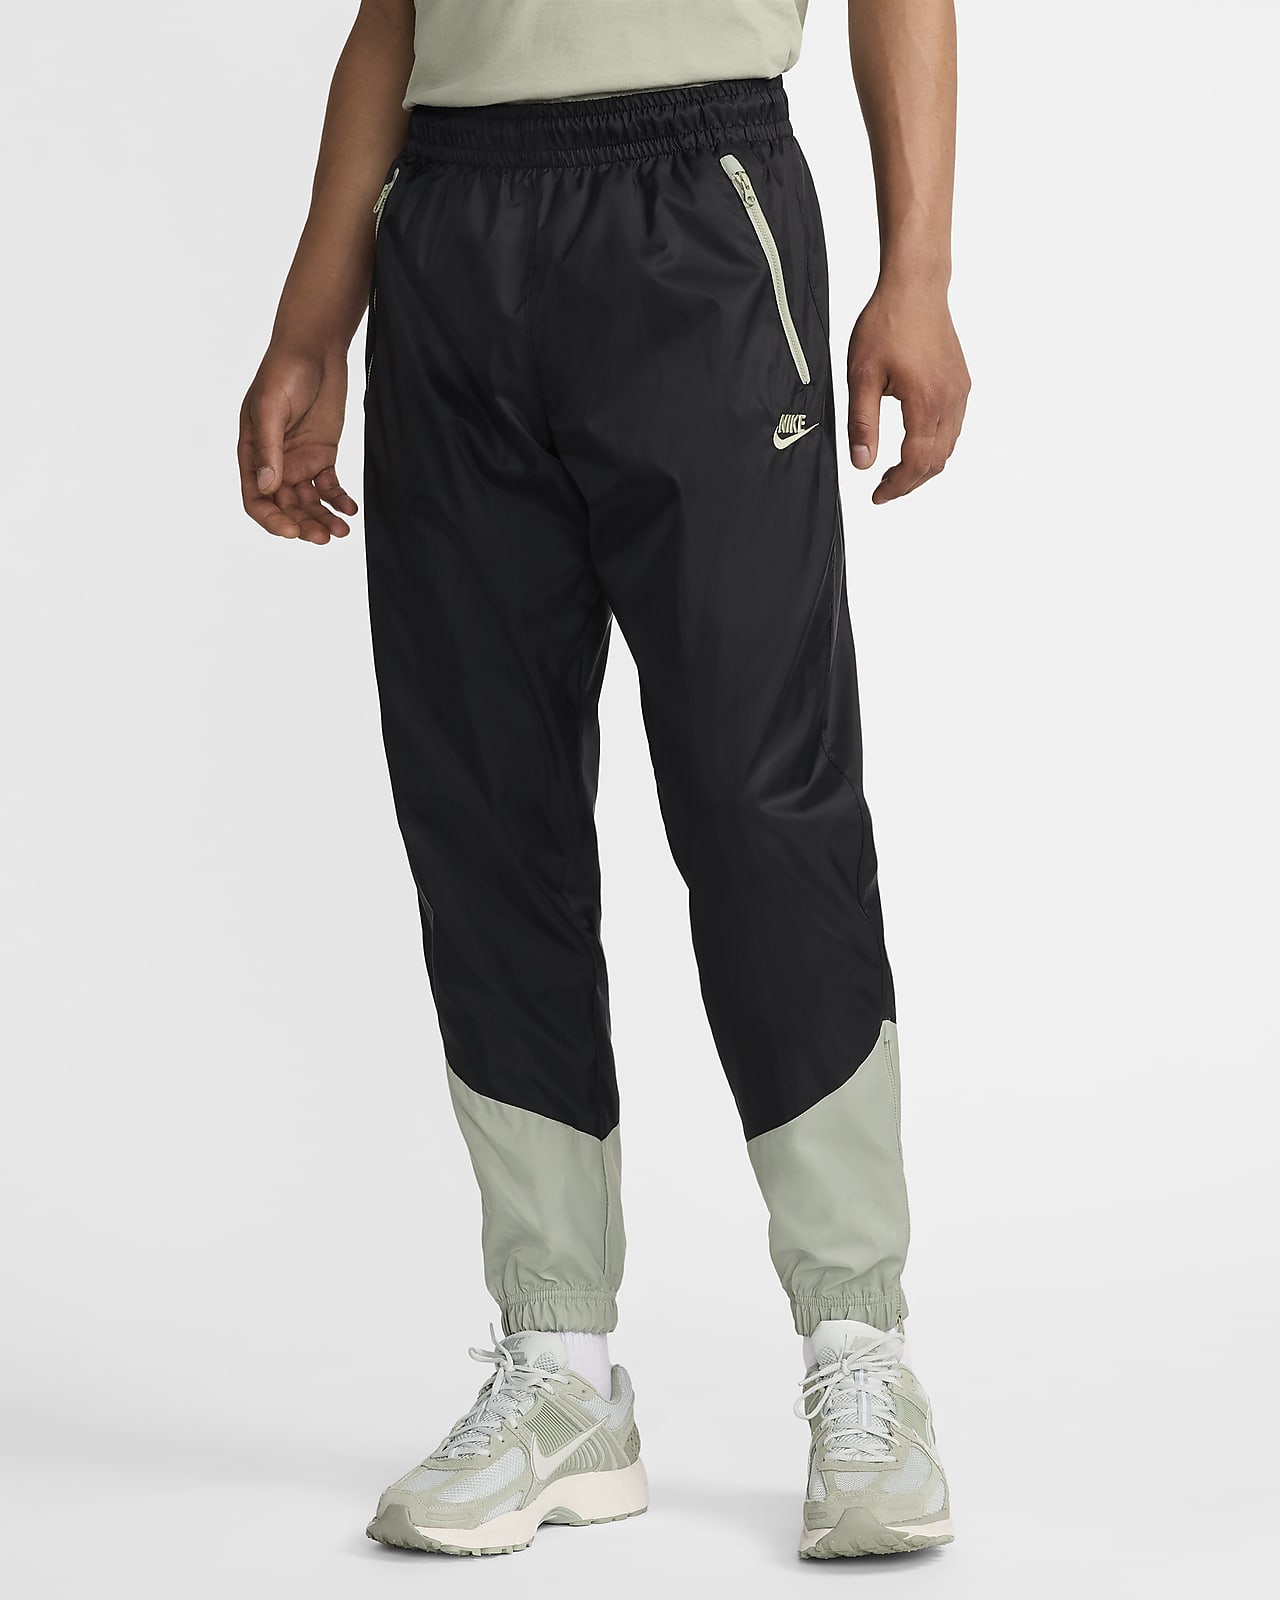 Pants forrados de tejido Woven para hombre Nike Windrunner